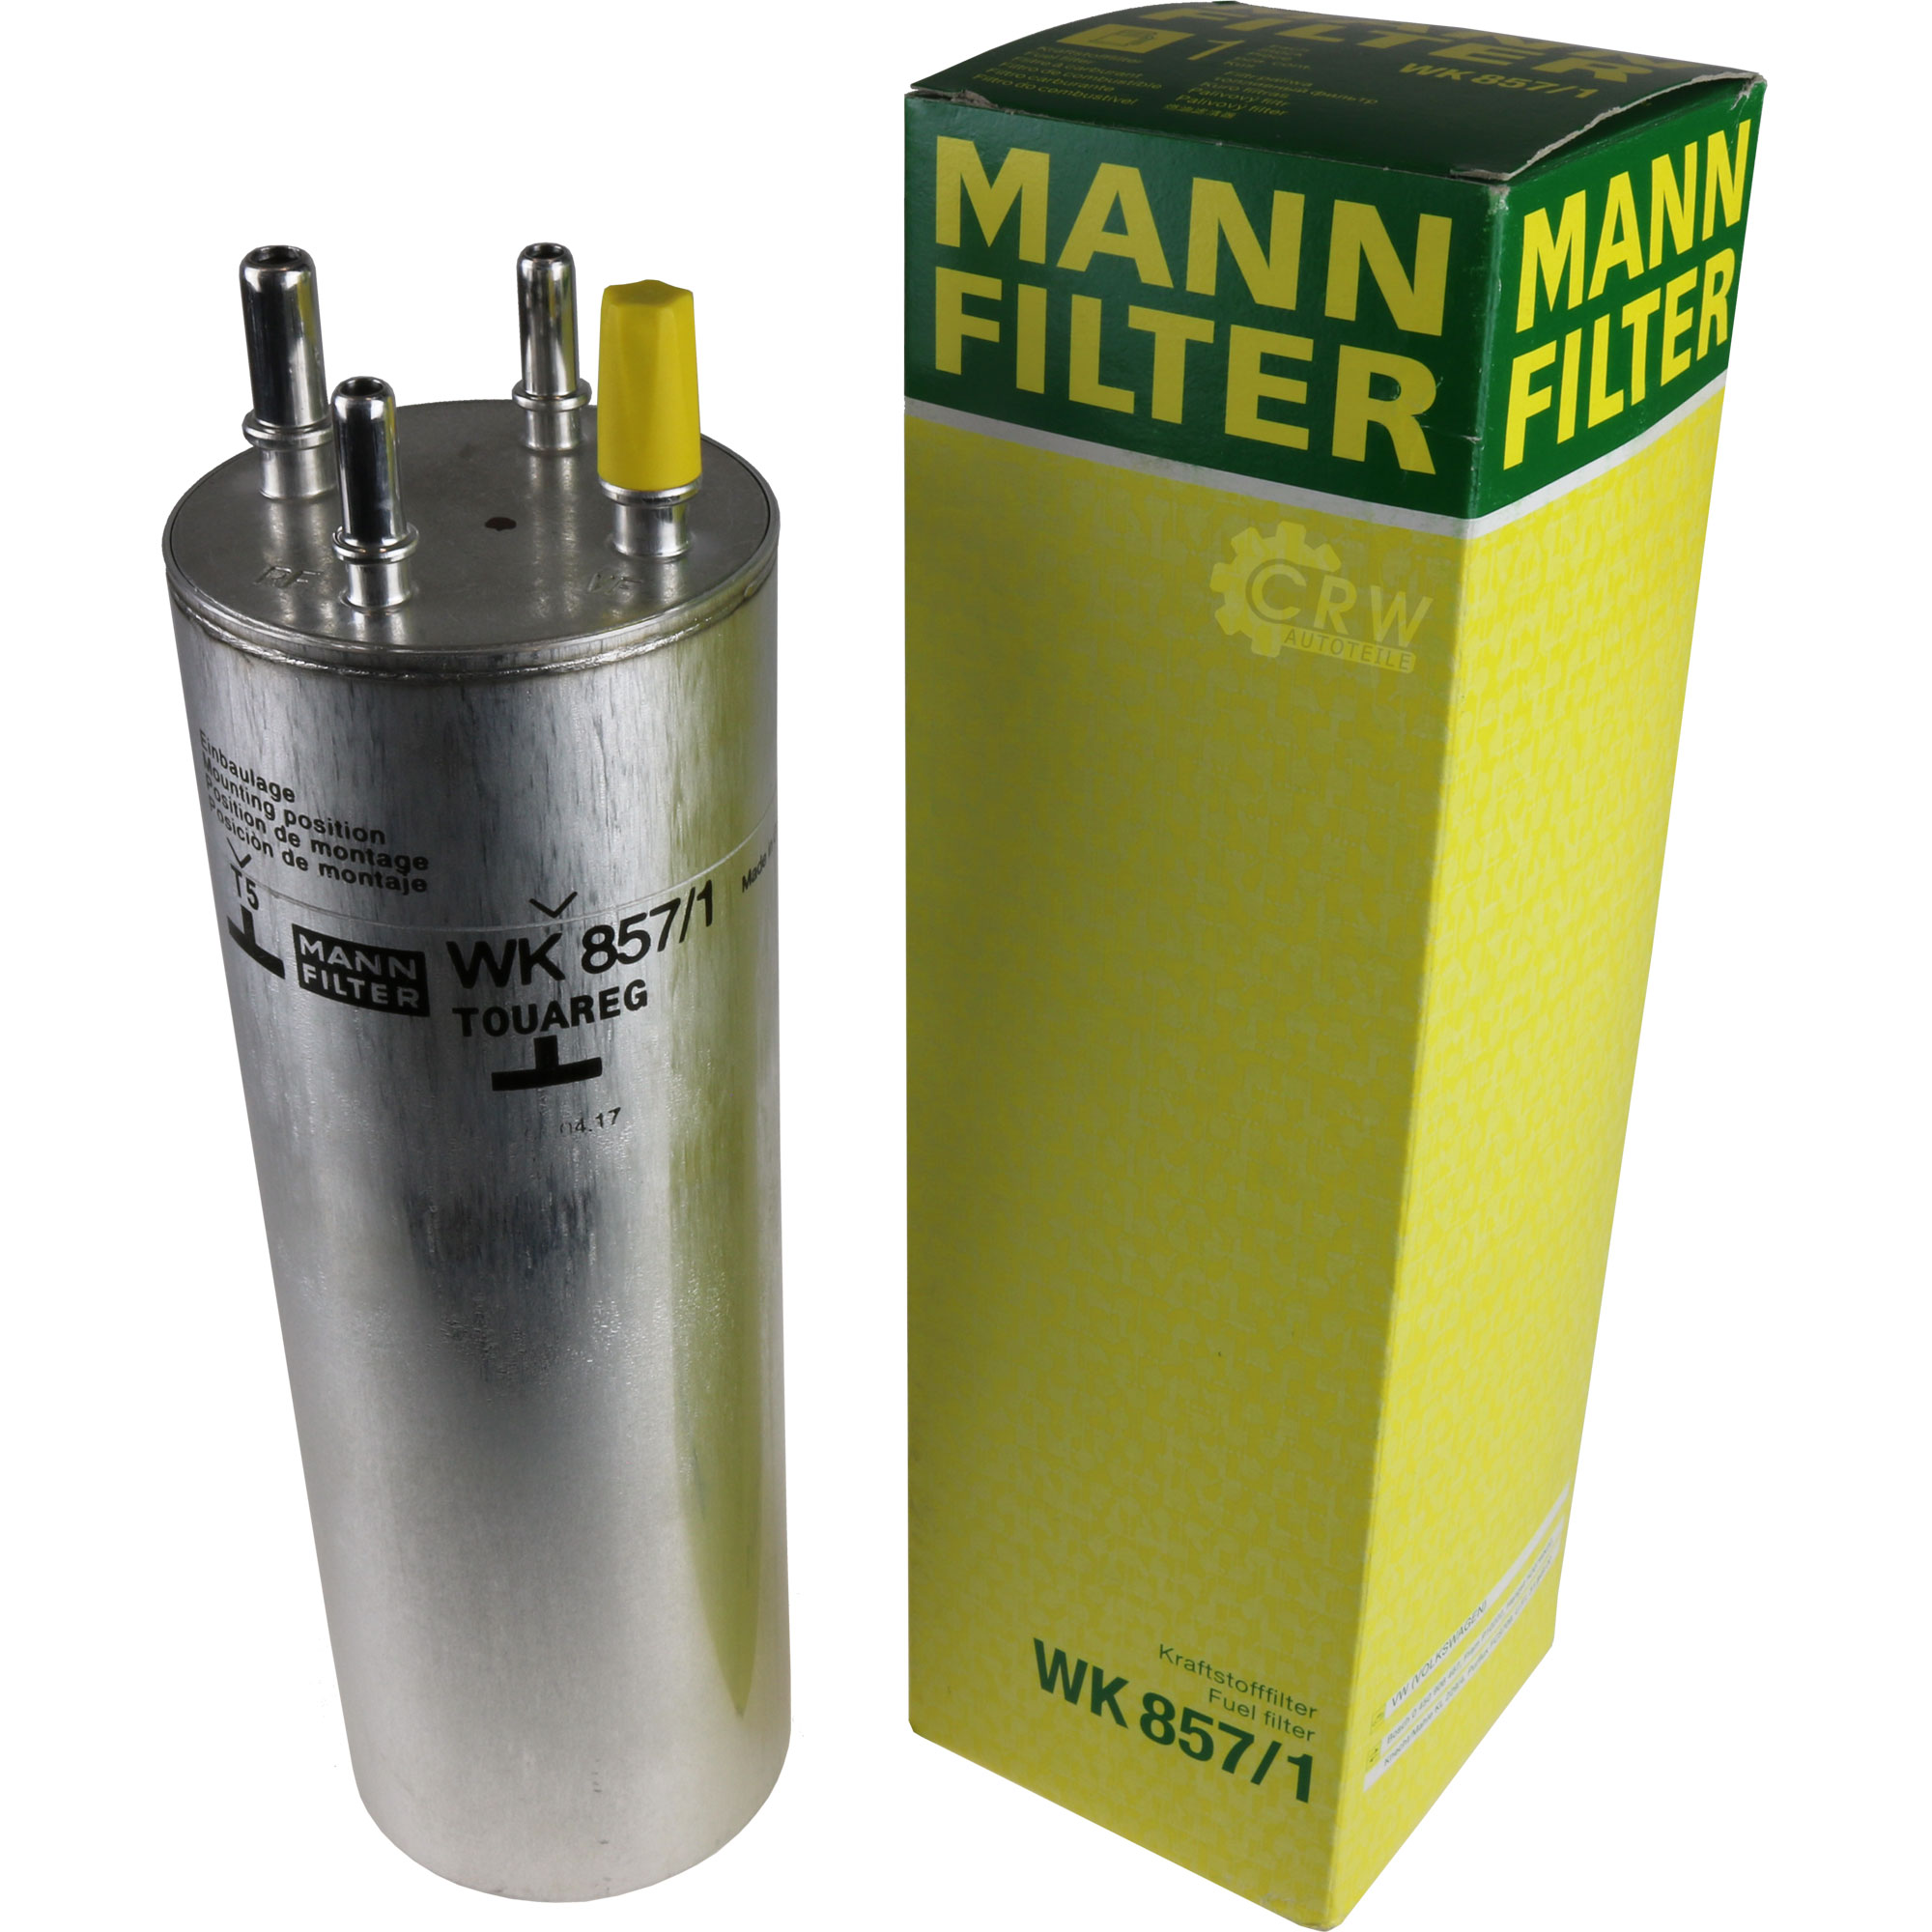 MANN-FILTER Kraftstofffilter WK 857/1 Fuel Filter